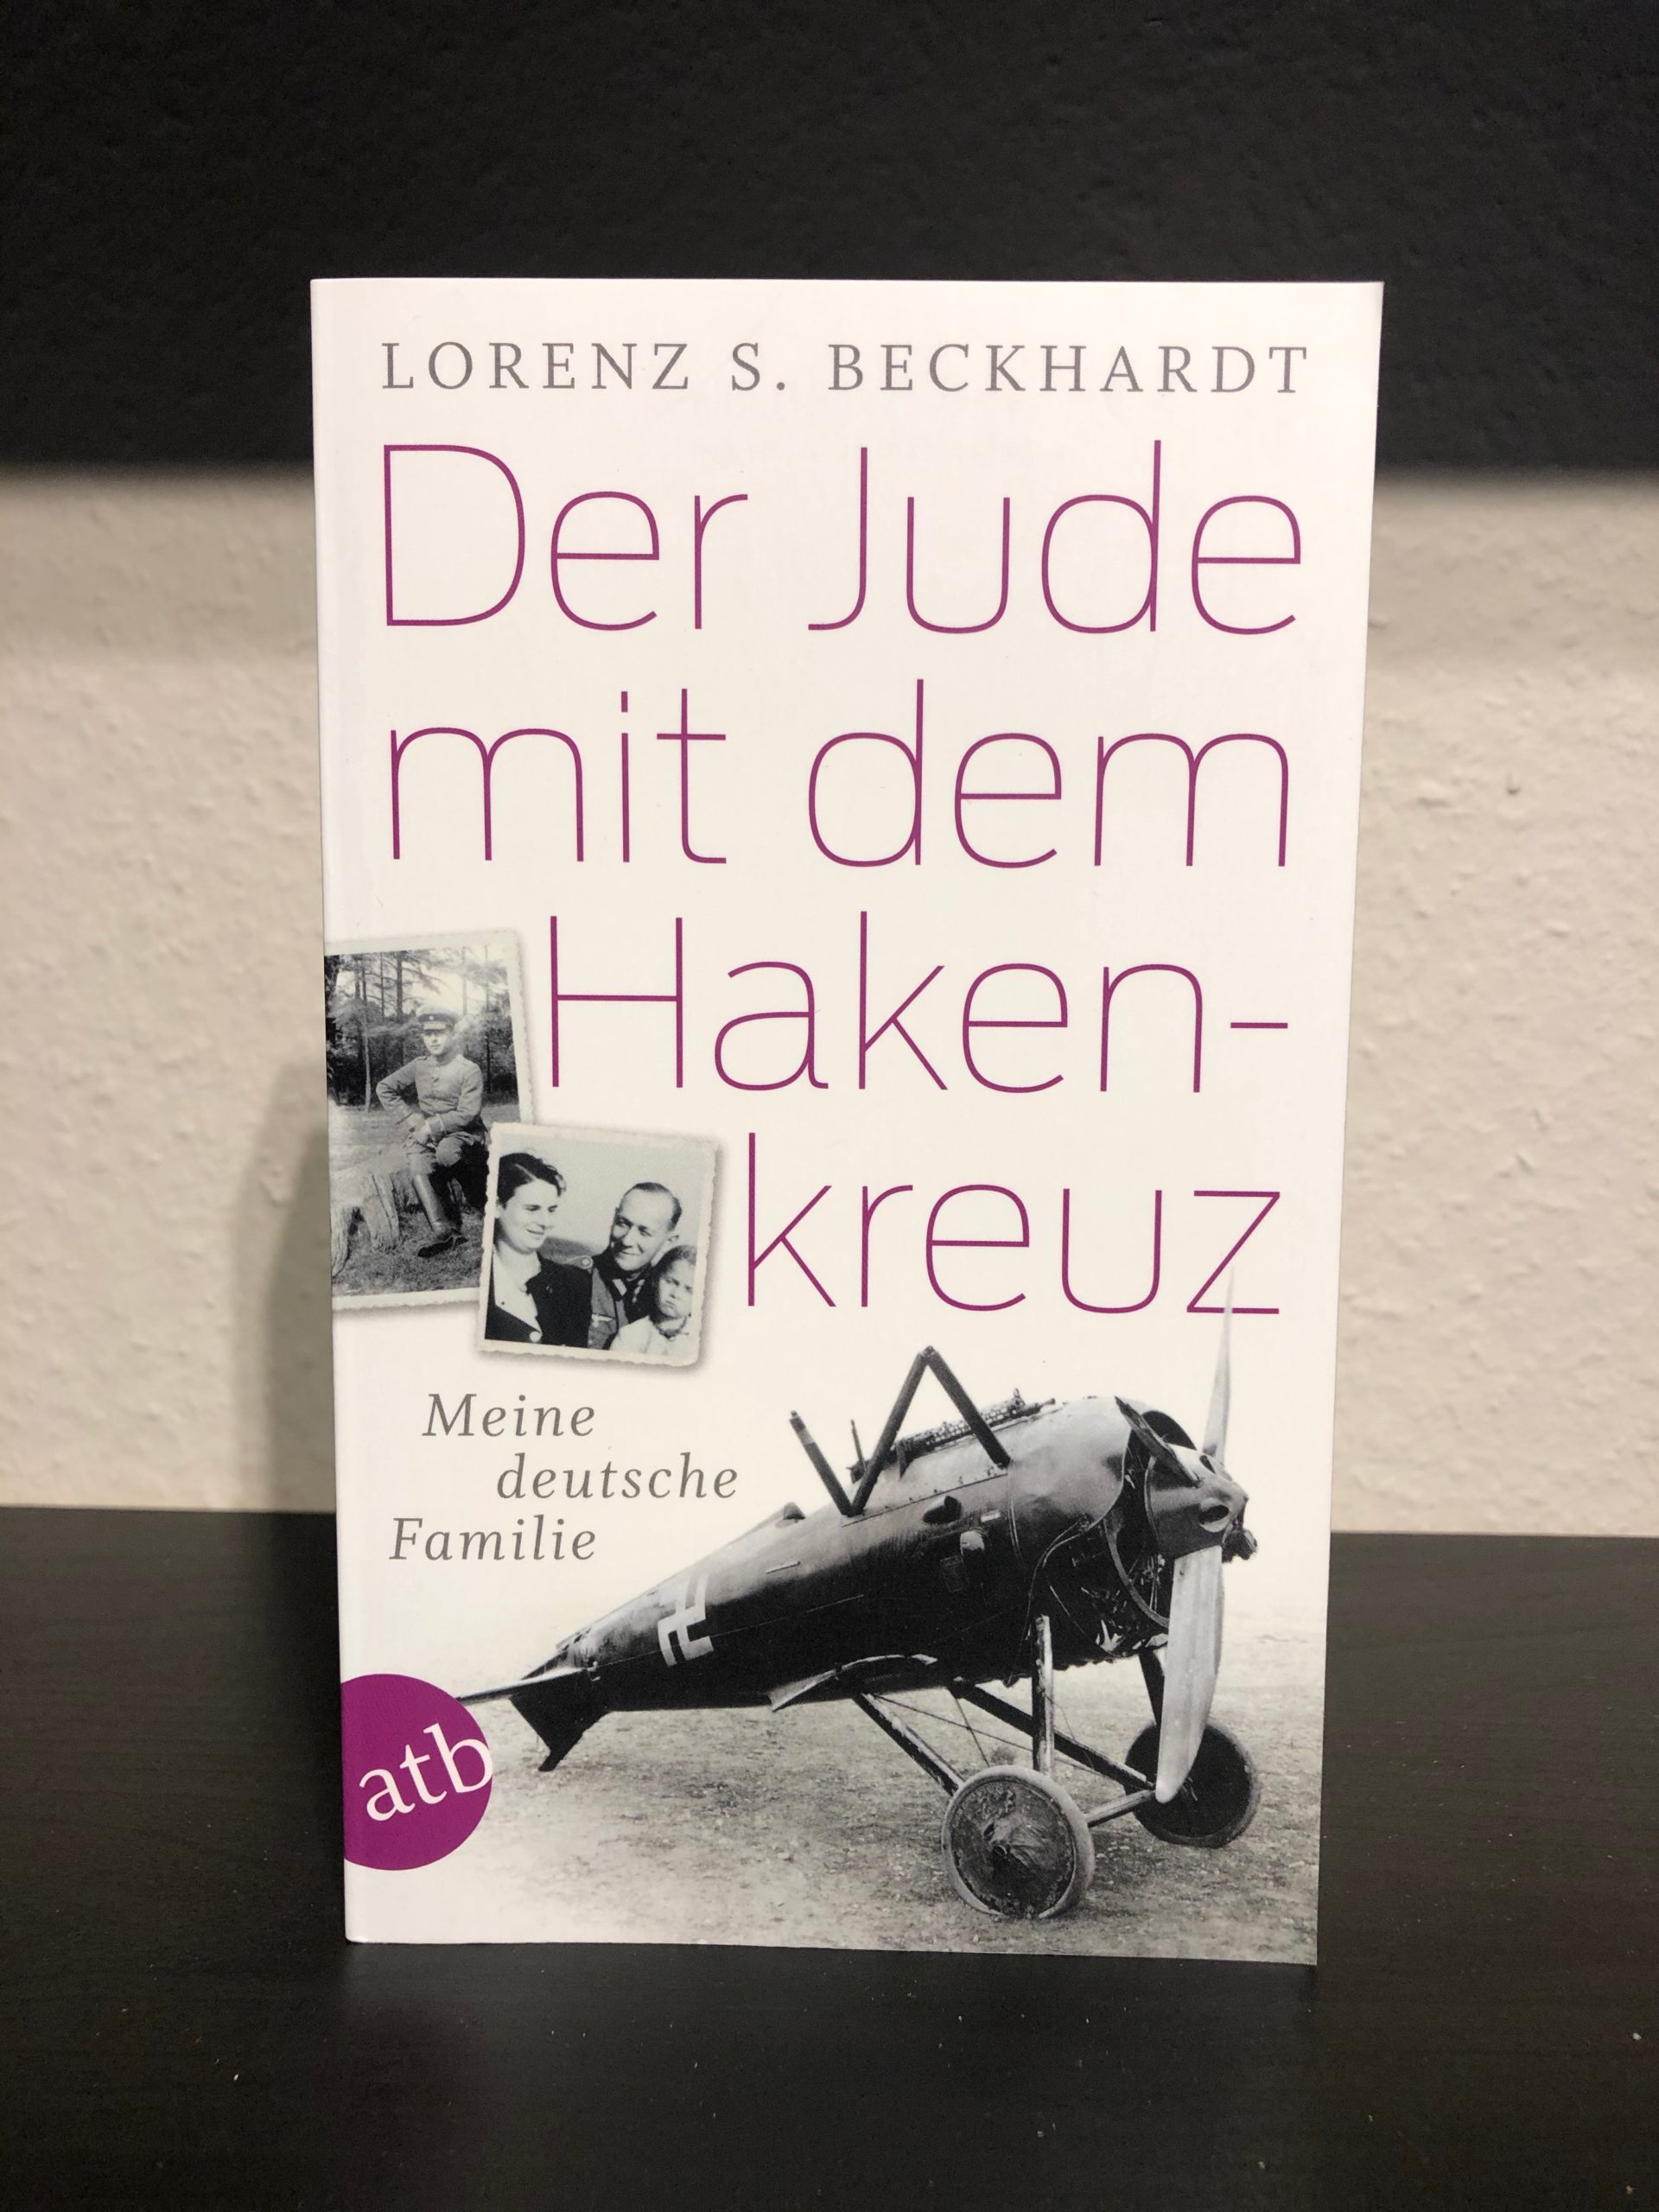 Der Jude mit dem Hakenkreuz - Meine deutsche Familie - Lorenz S. Beckhardt-image